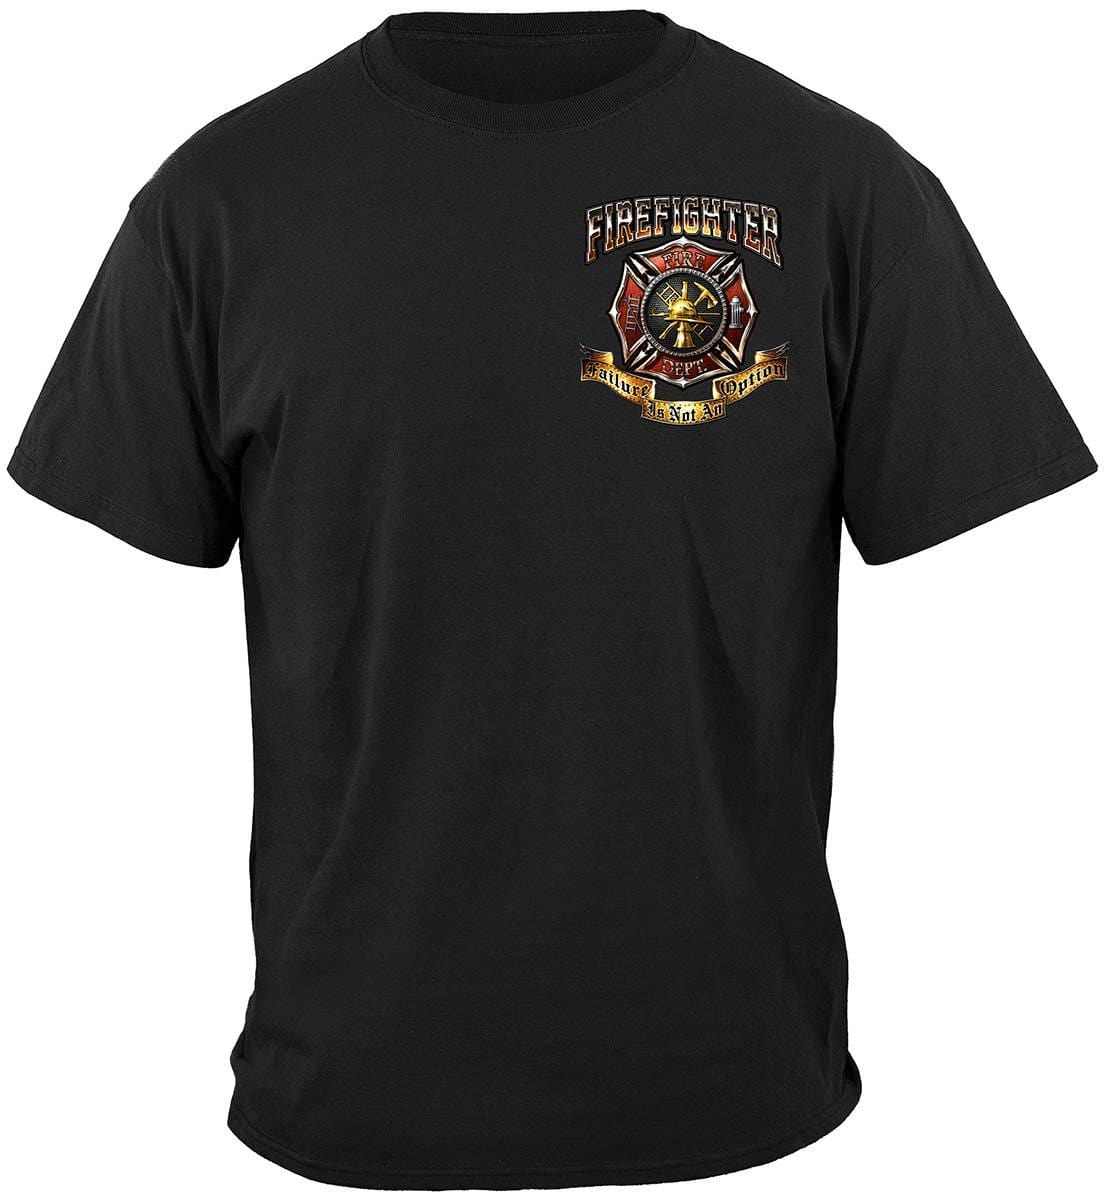 Firefighter Failure Is Not An Option Premium T-Shirt